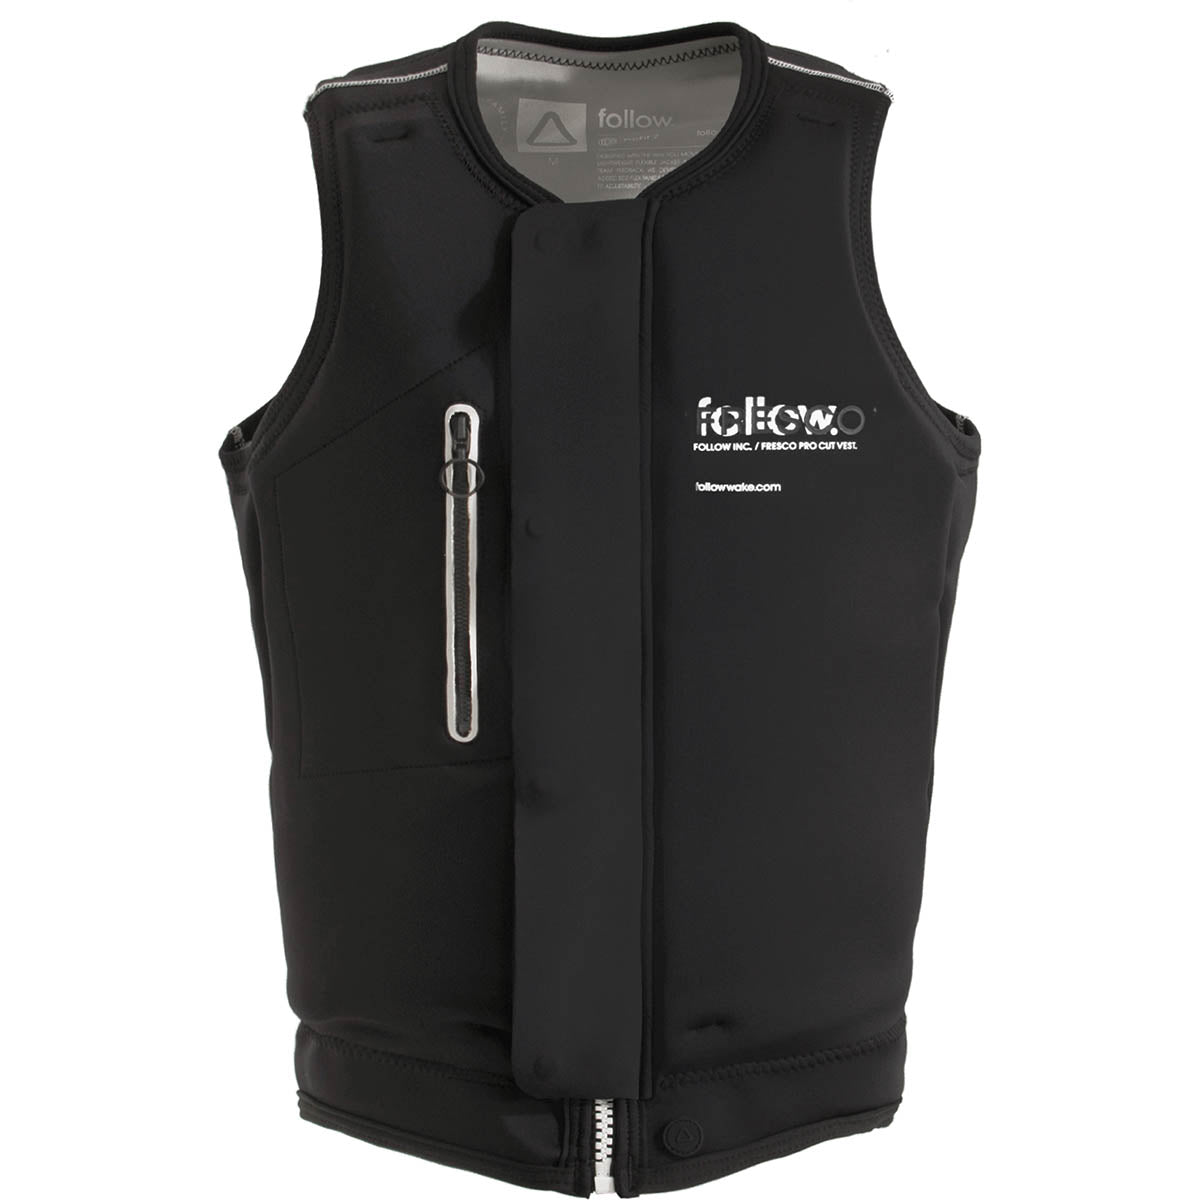 Follow Fresco Comp Wake Vest in Black - BoardCo